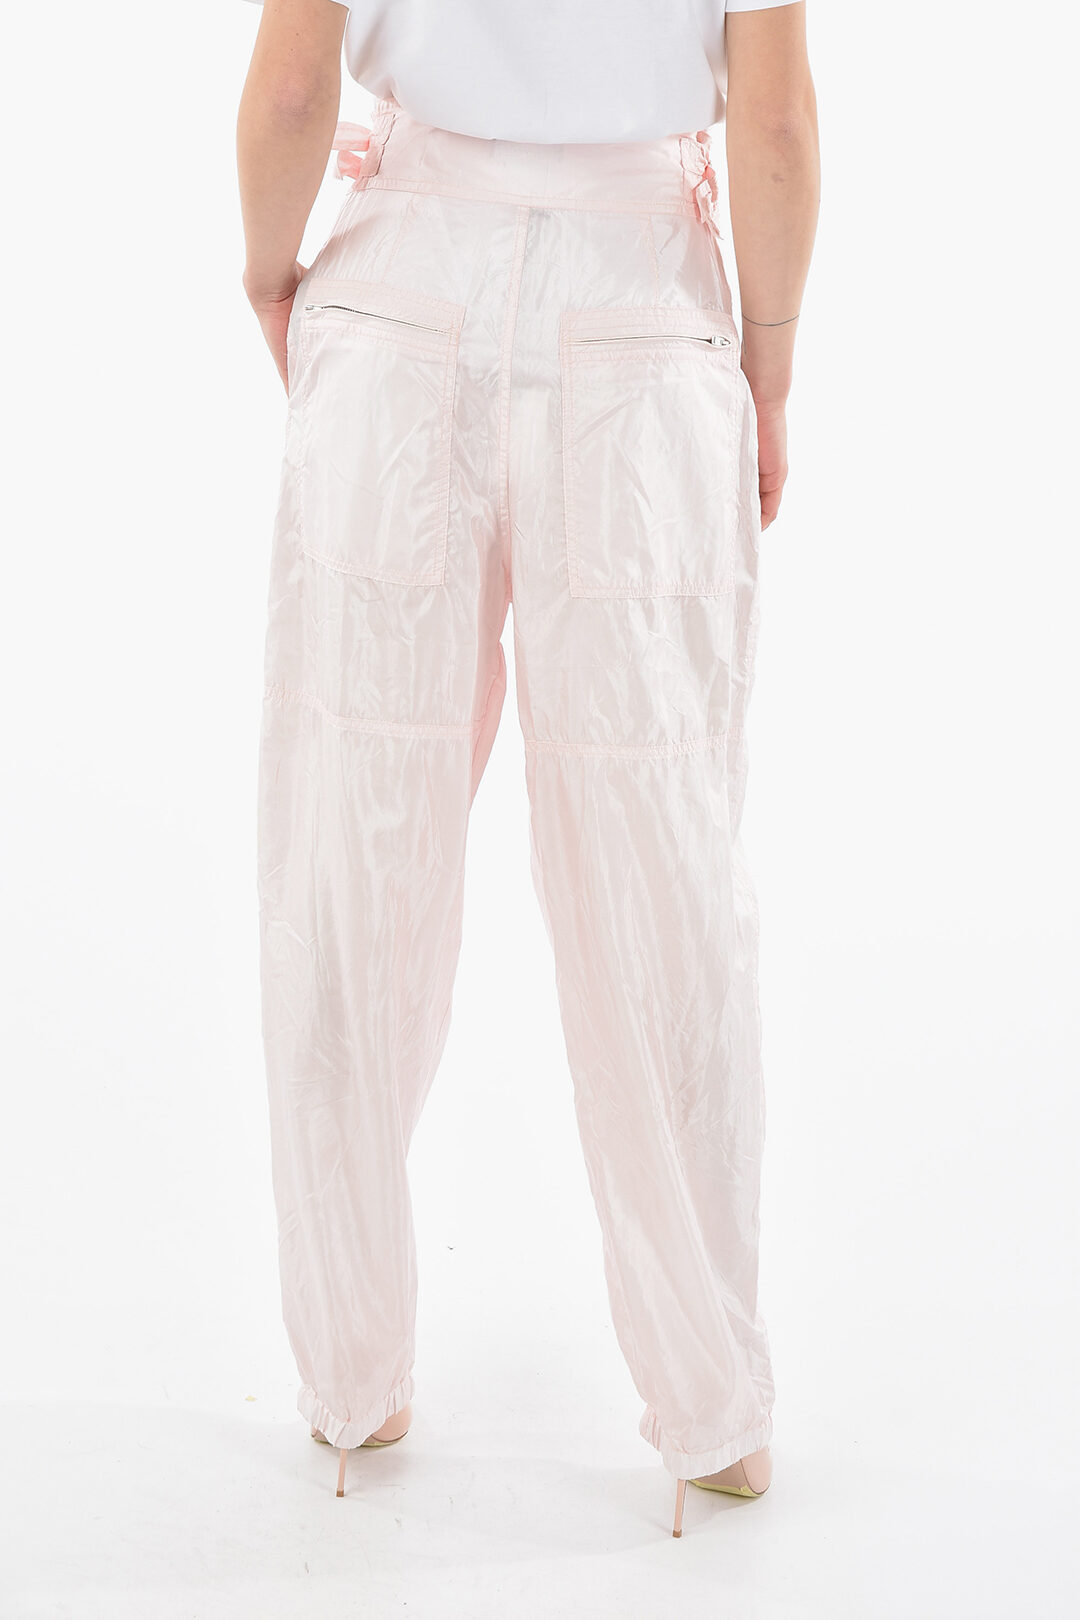 Silk and Nylon OLGA High-waisted Pants